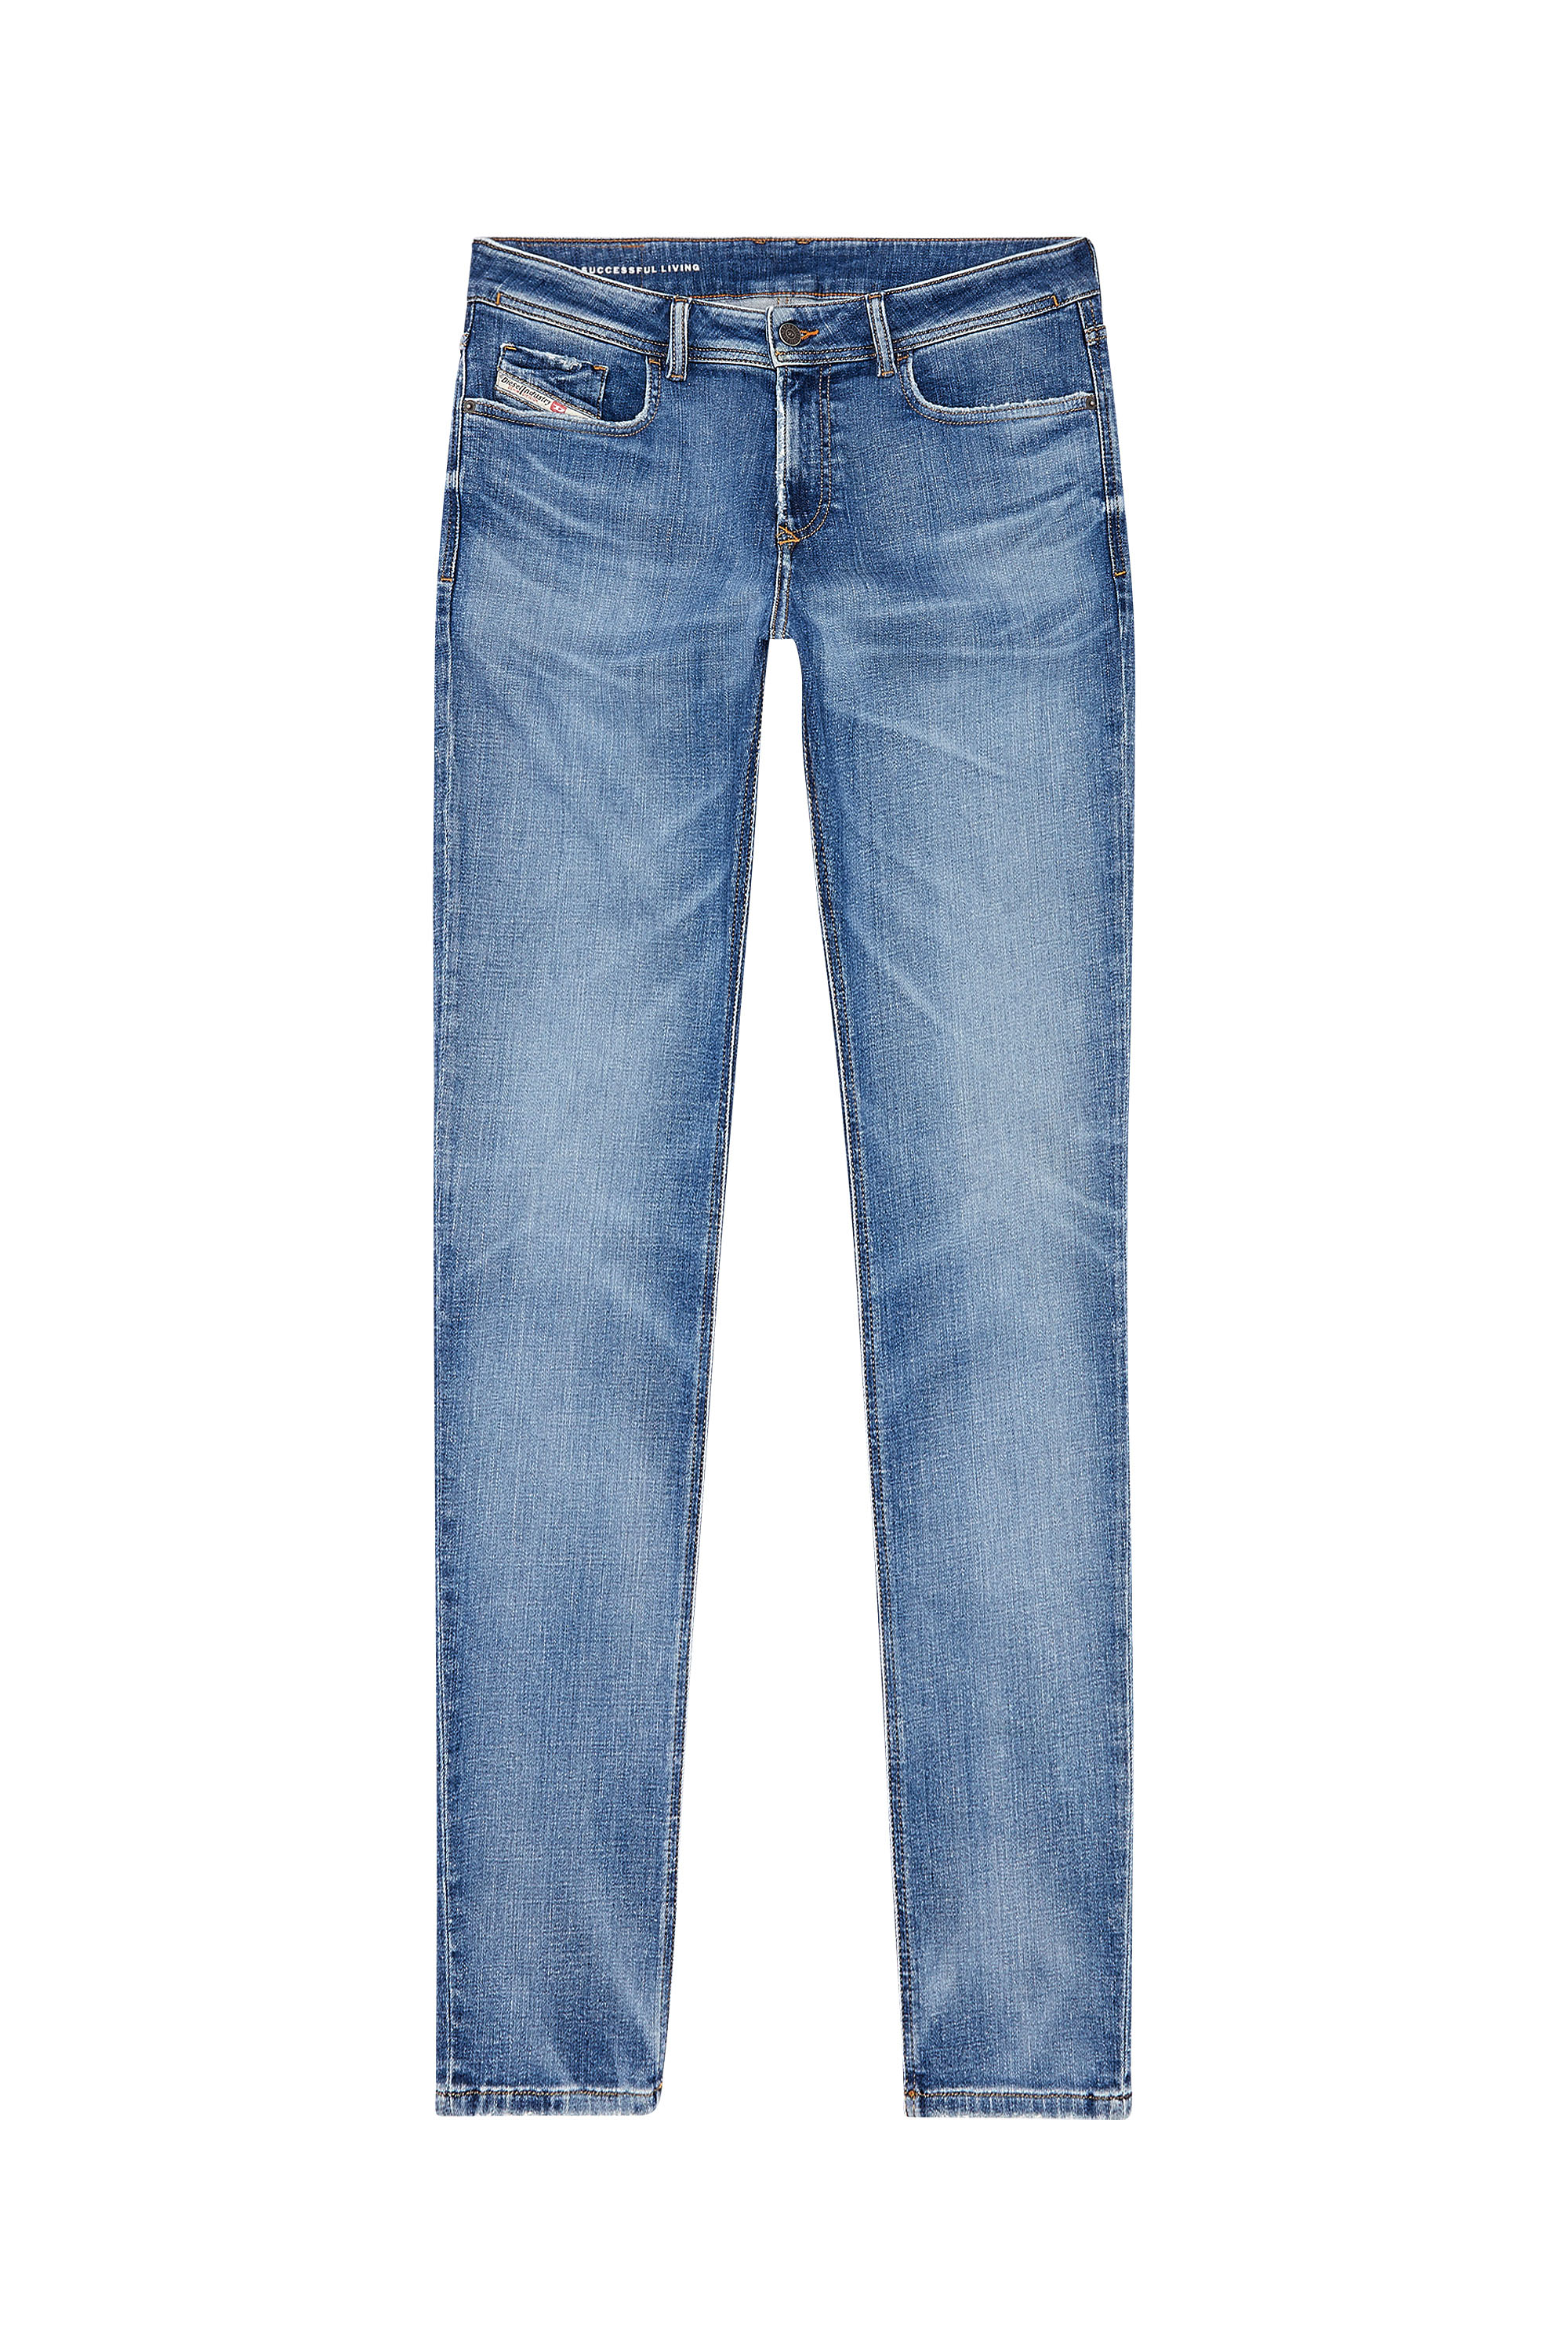 Diesel - Skinny Jeans 1979 Sleenker 09H68, Medium blue - Image 5